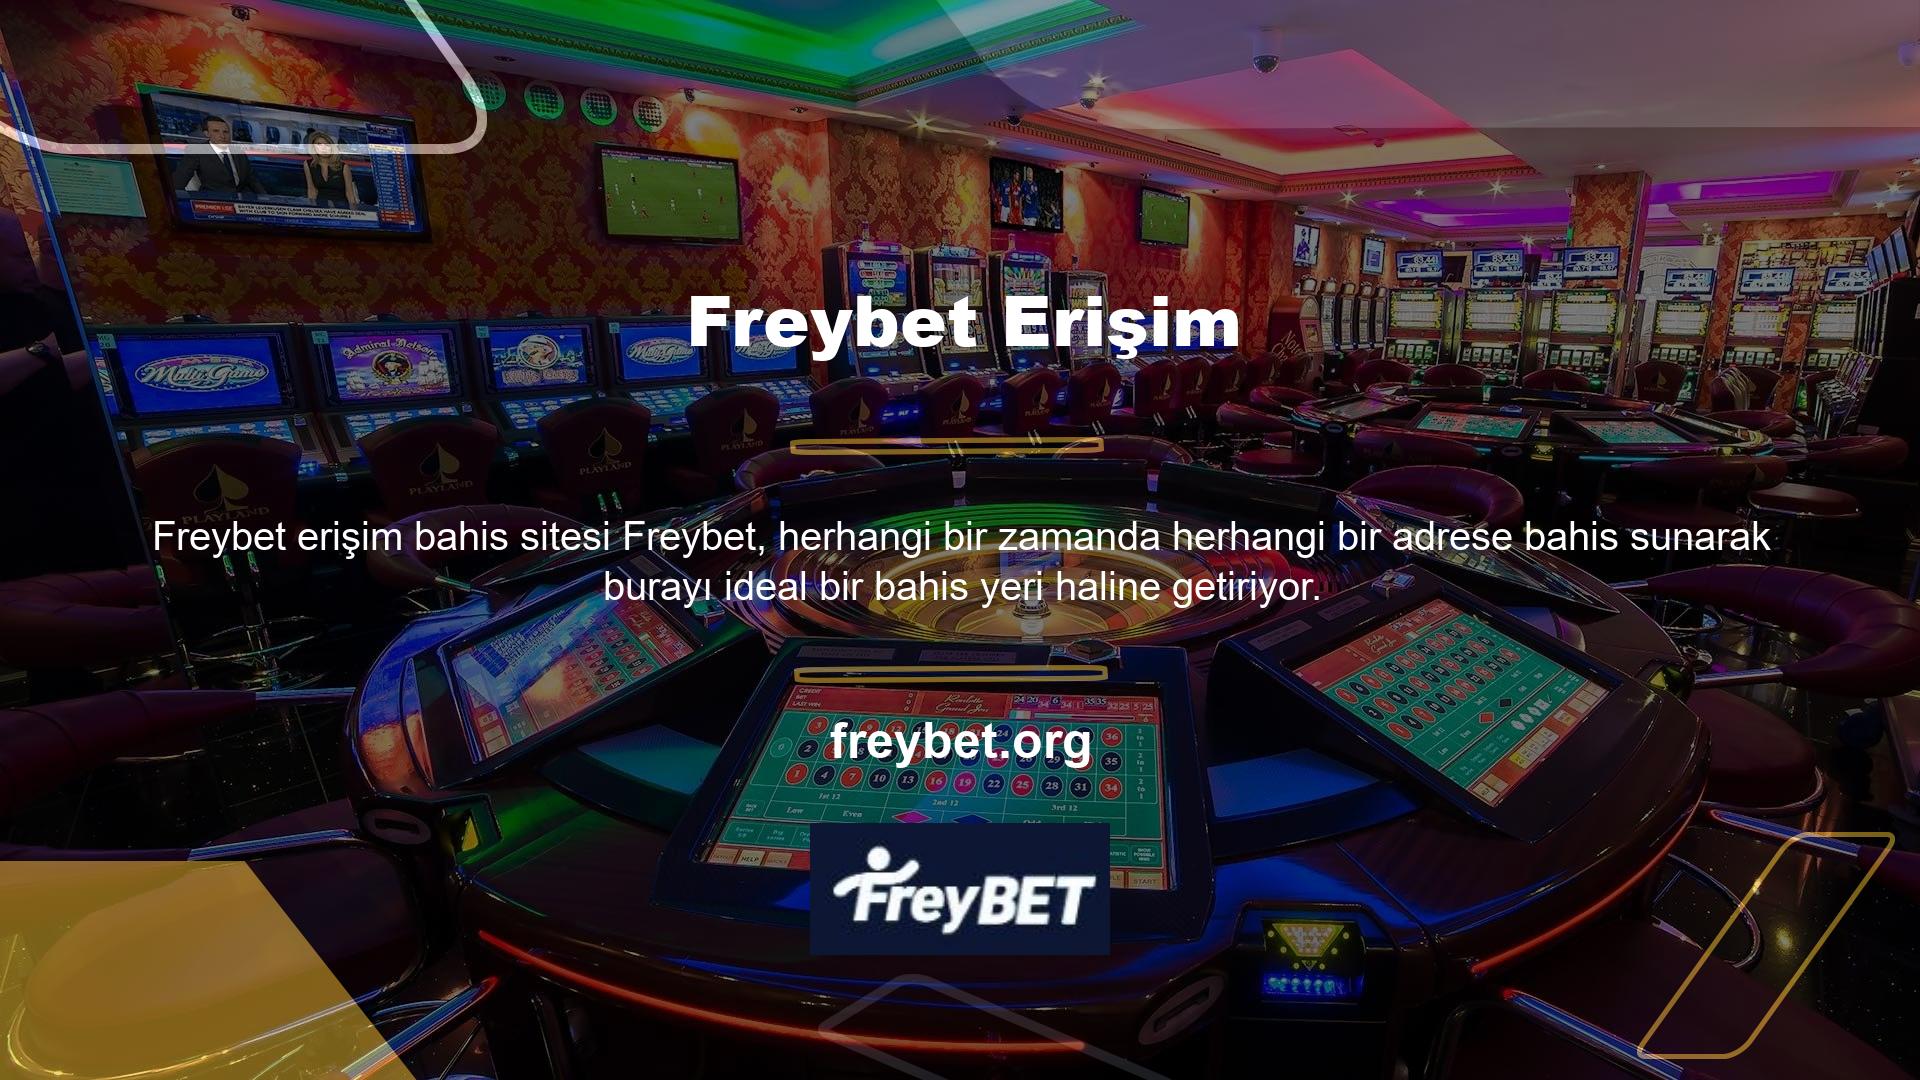 BTK'nın yasağının ardından Casino meraklıları, Freybet giriş adresinin neden her adres değişikliğinden sonra değiştiğini merak etti